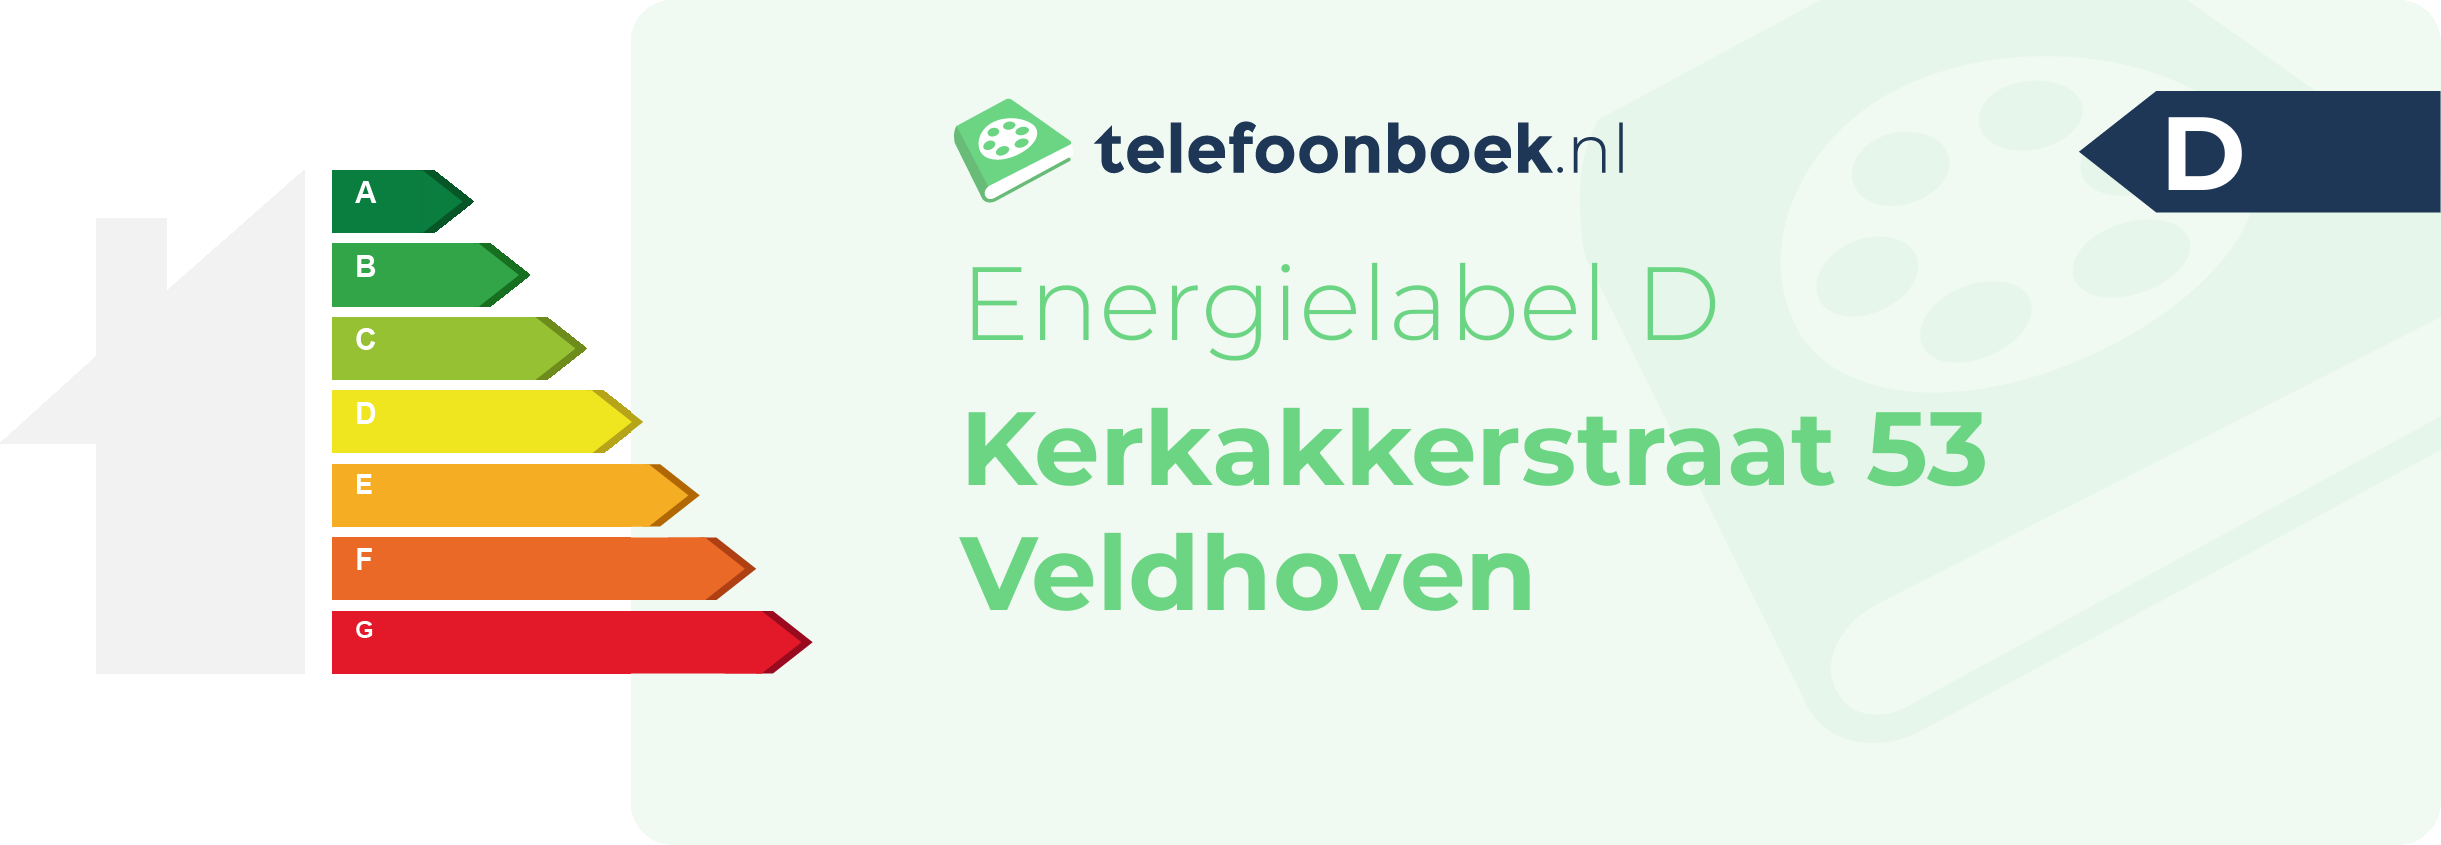 Energielabel Kerkakkerstraat 53 Veldhoven